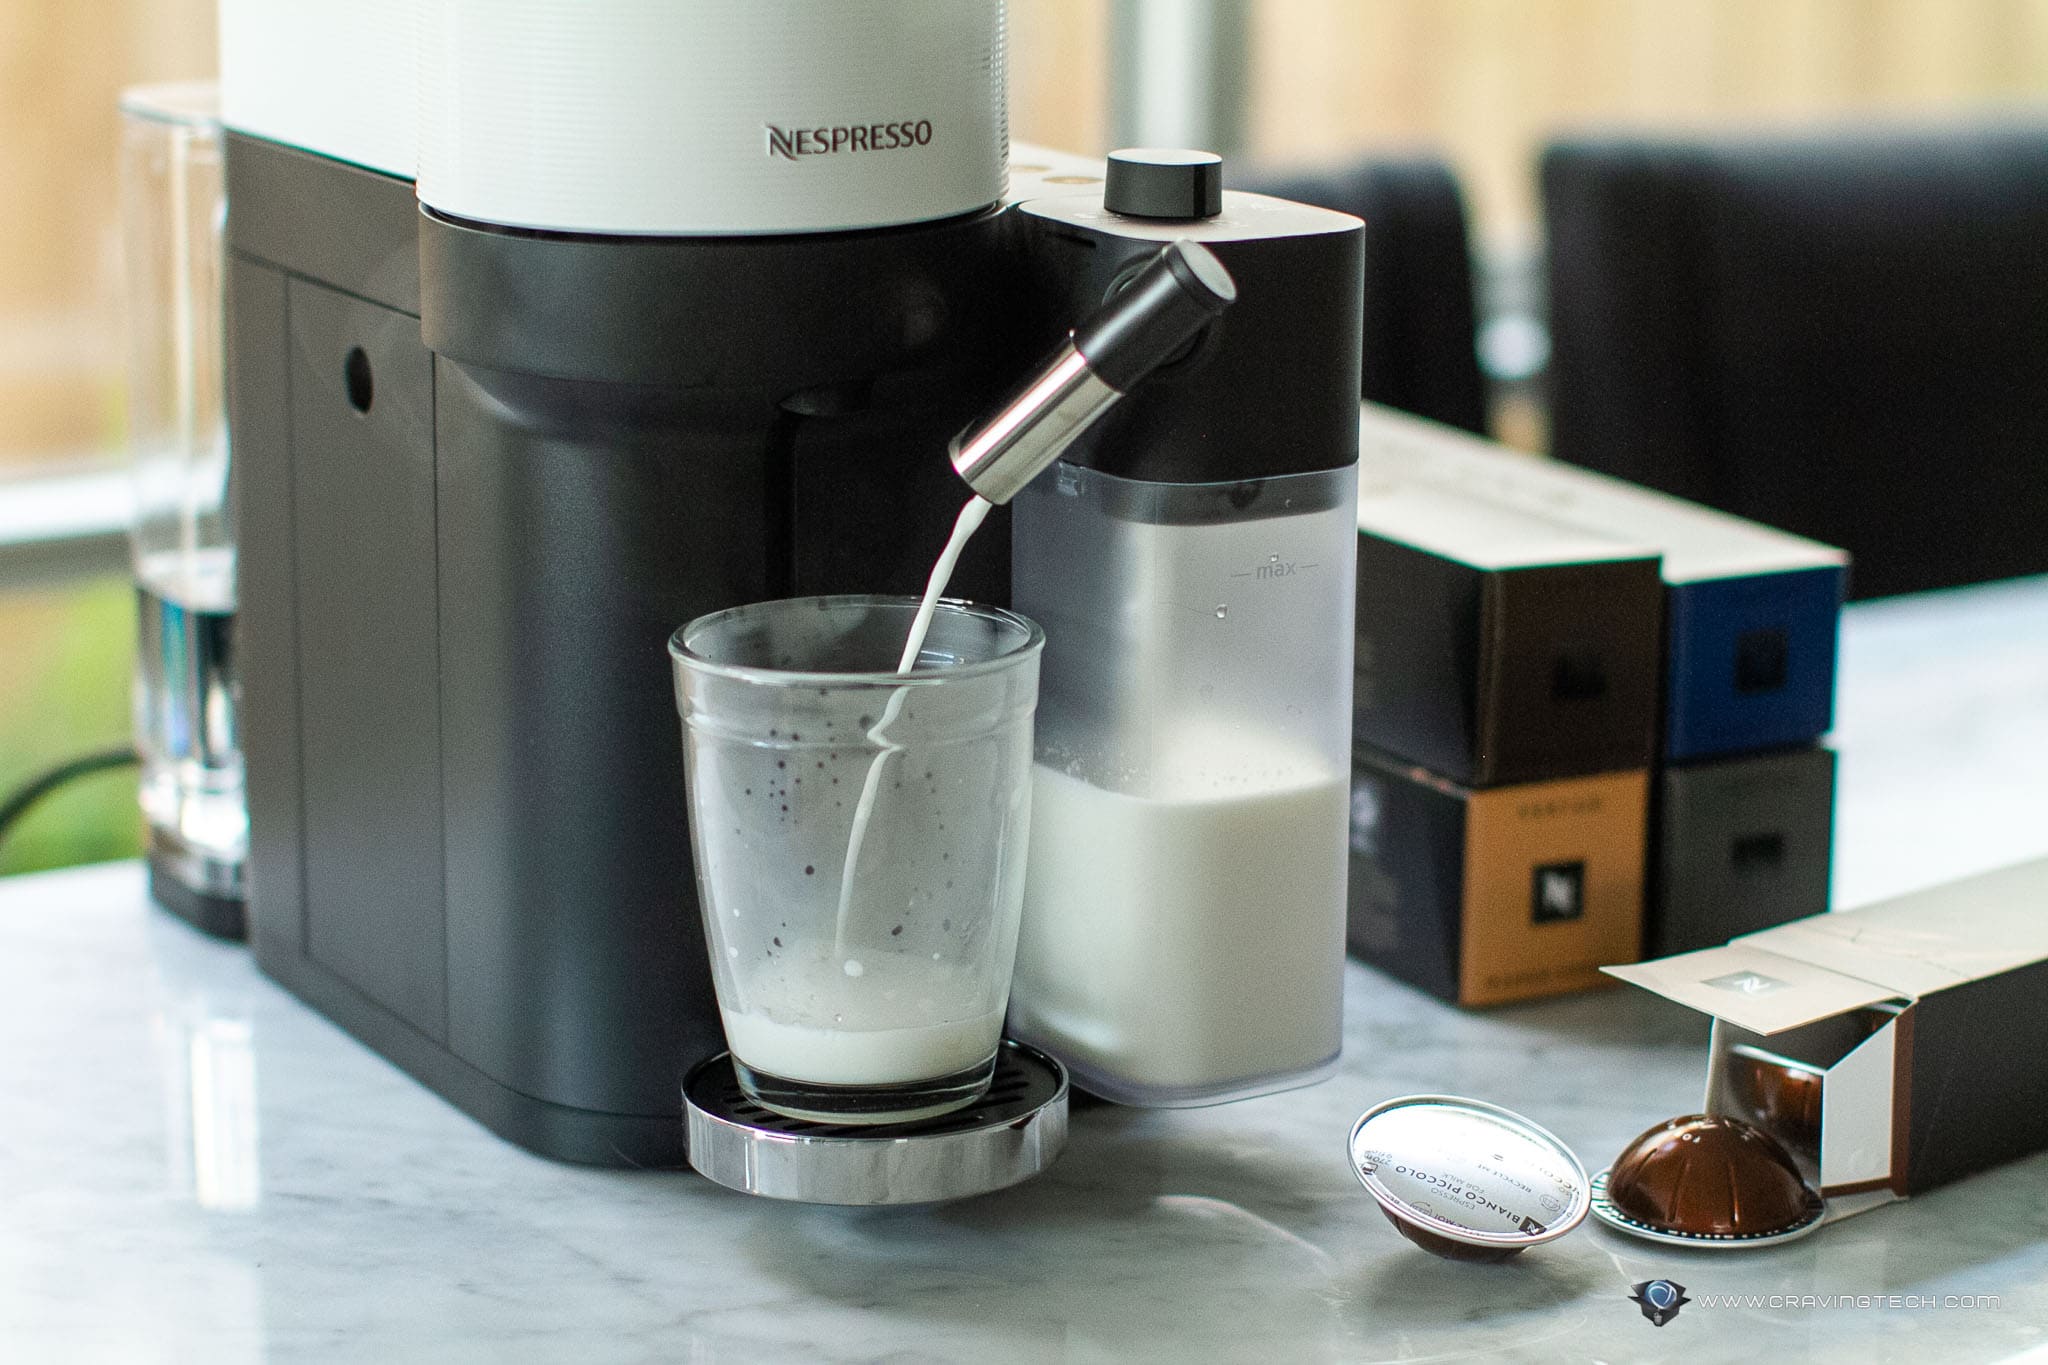 This new Nespresso machine makes coffee pods great again – Nespresso Vertuo Lattissima Review